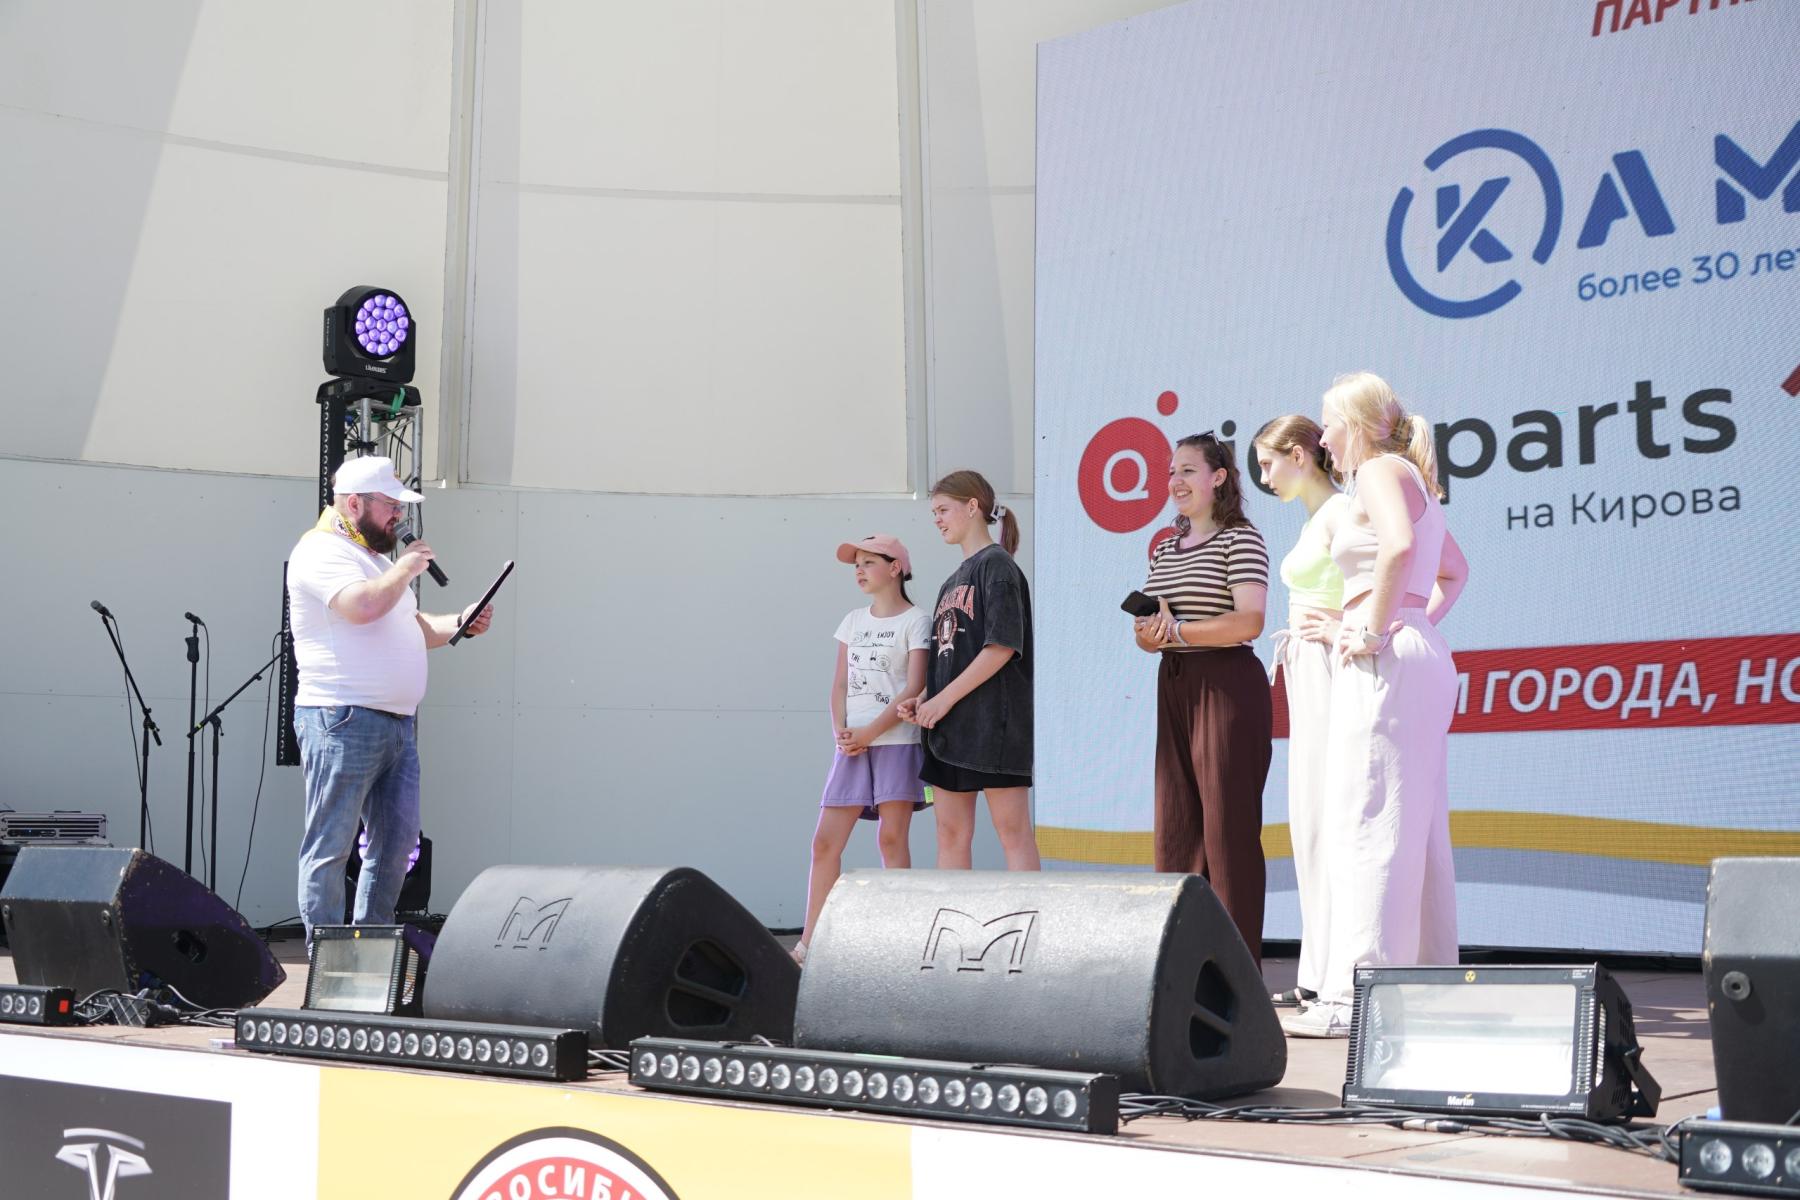 Фото Звёзды на сцене и трансформеры в парке: в Новосибирске с размахом завершилось празднование Дня города. Полный фотоотчёт 47